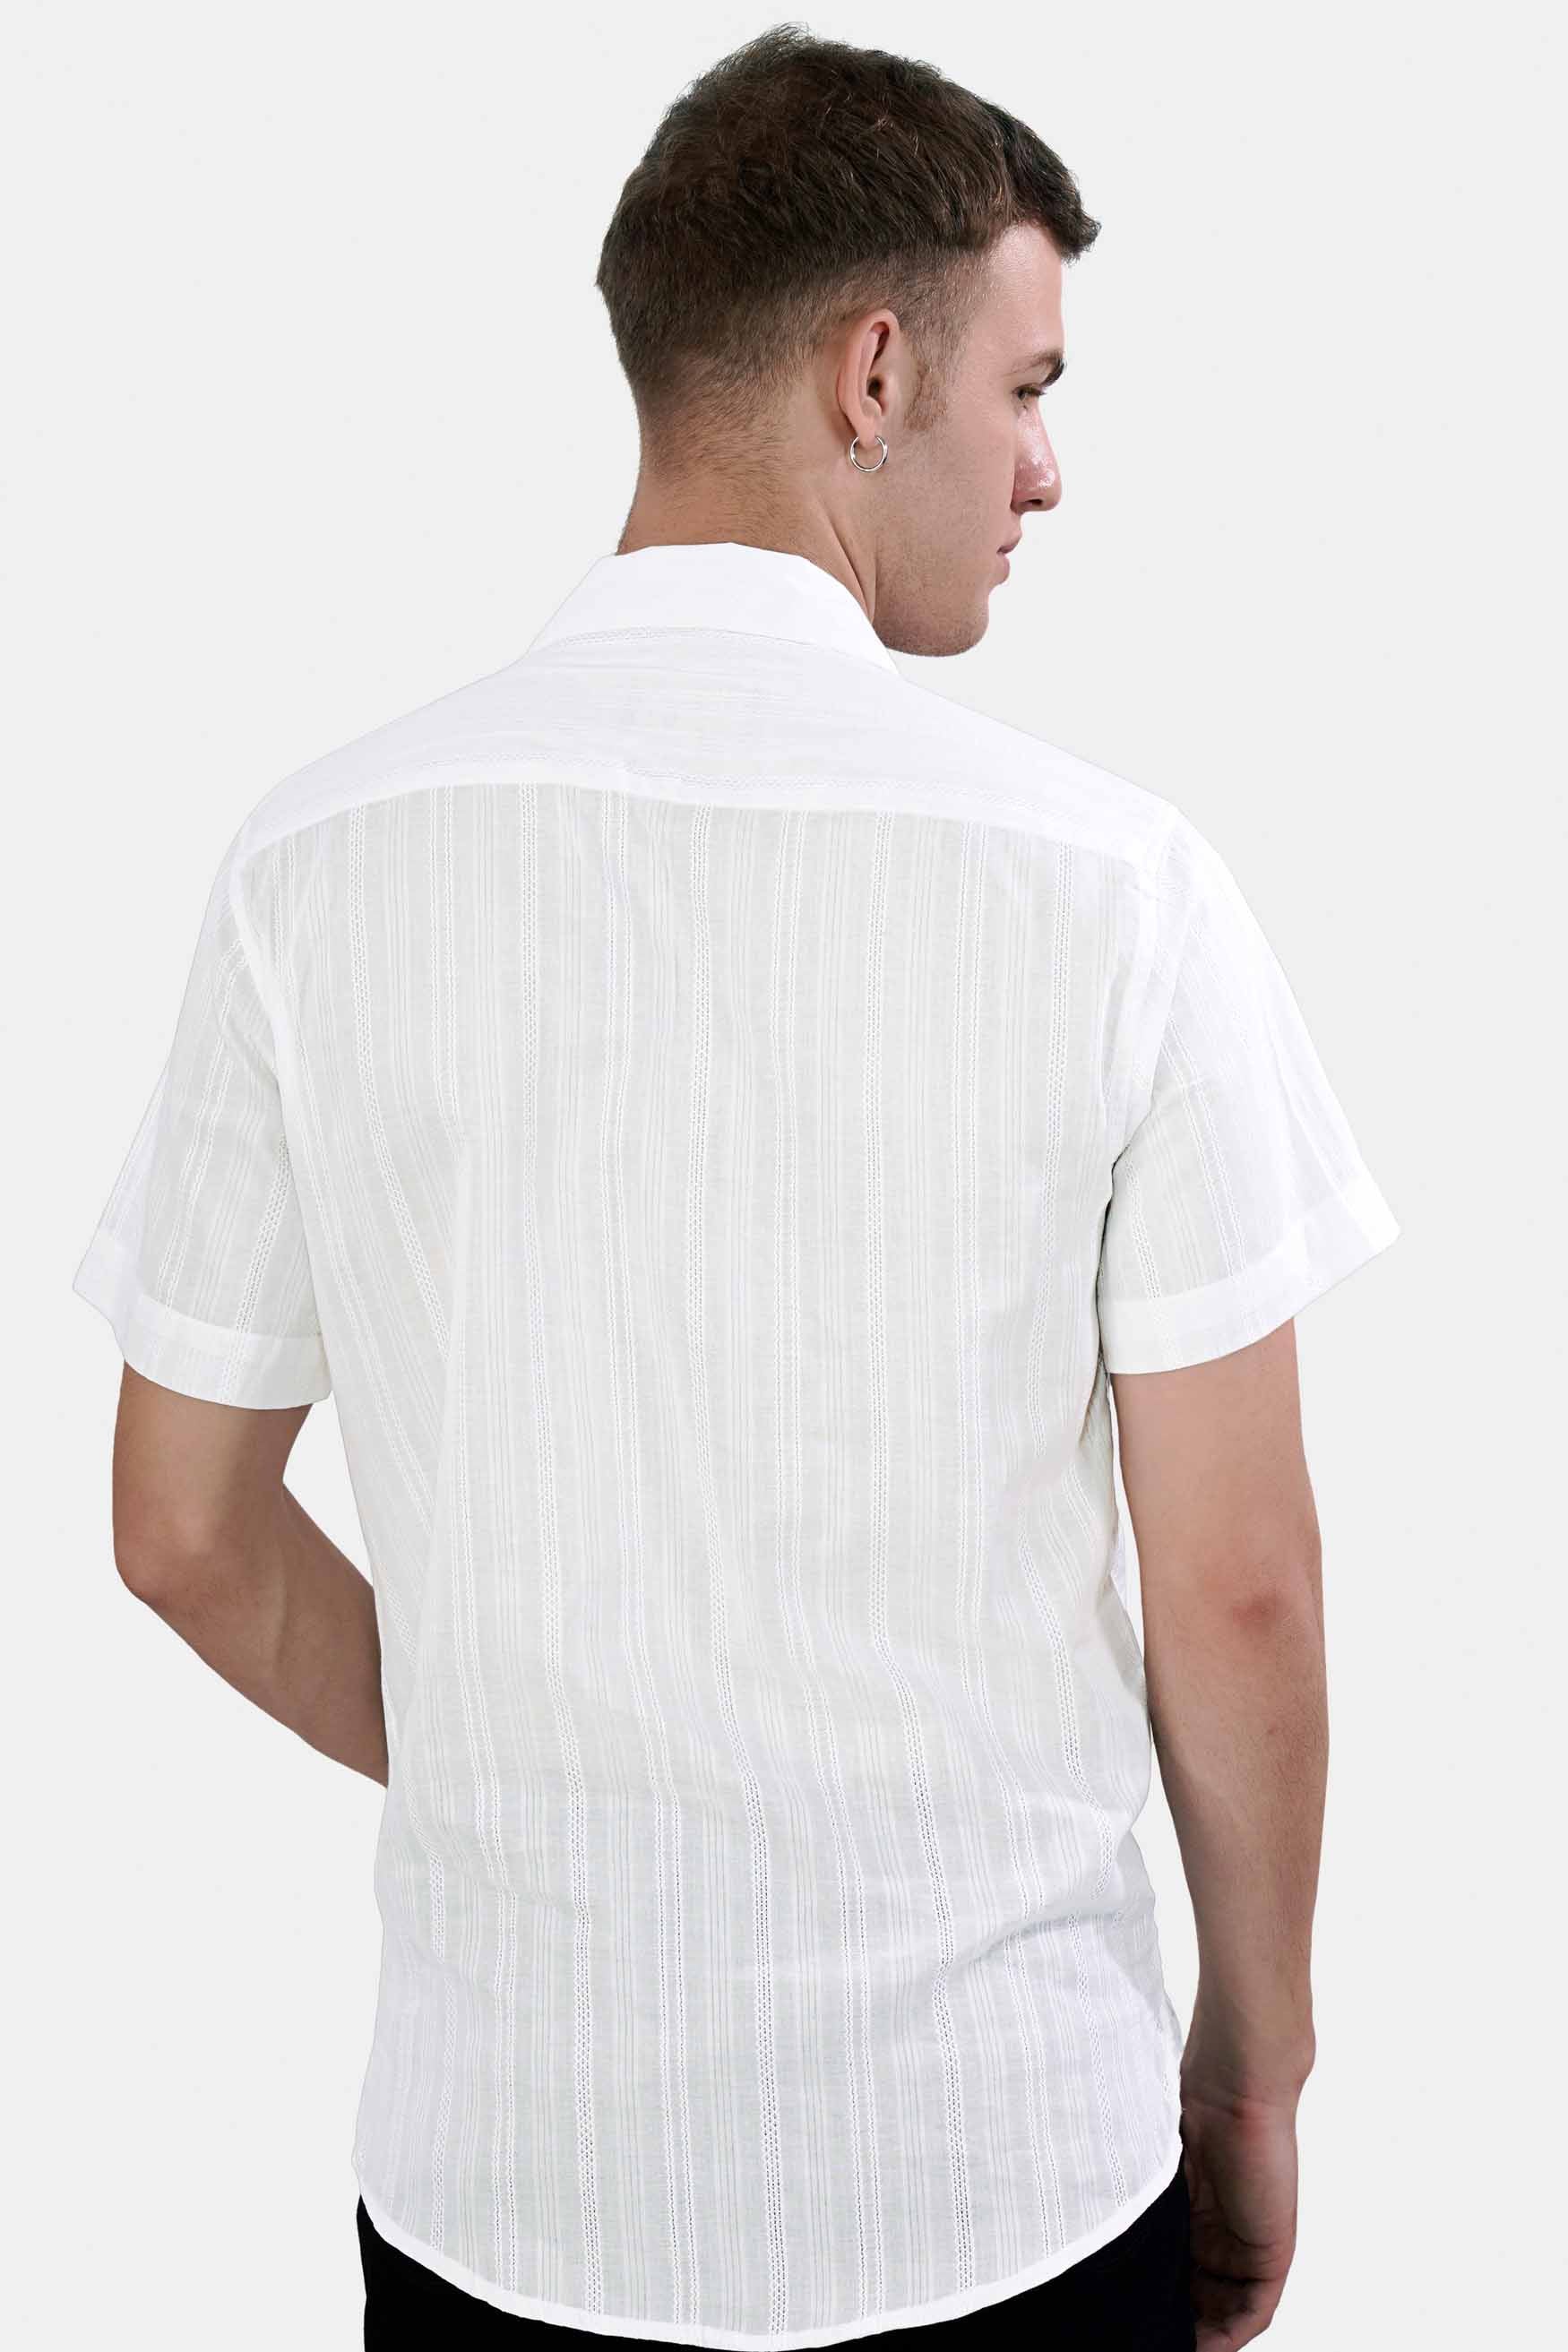 Bright White Dobby Textured Premium Giza Cotton Designer Shirt